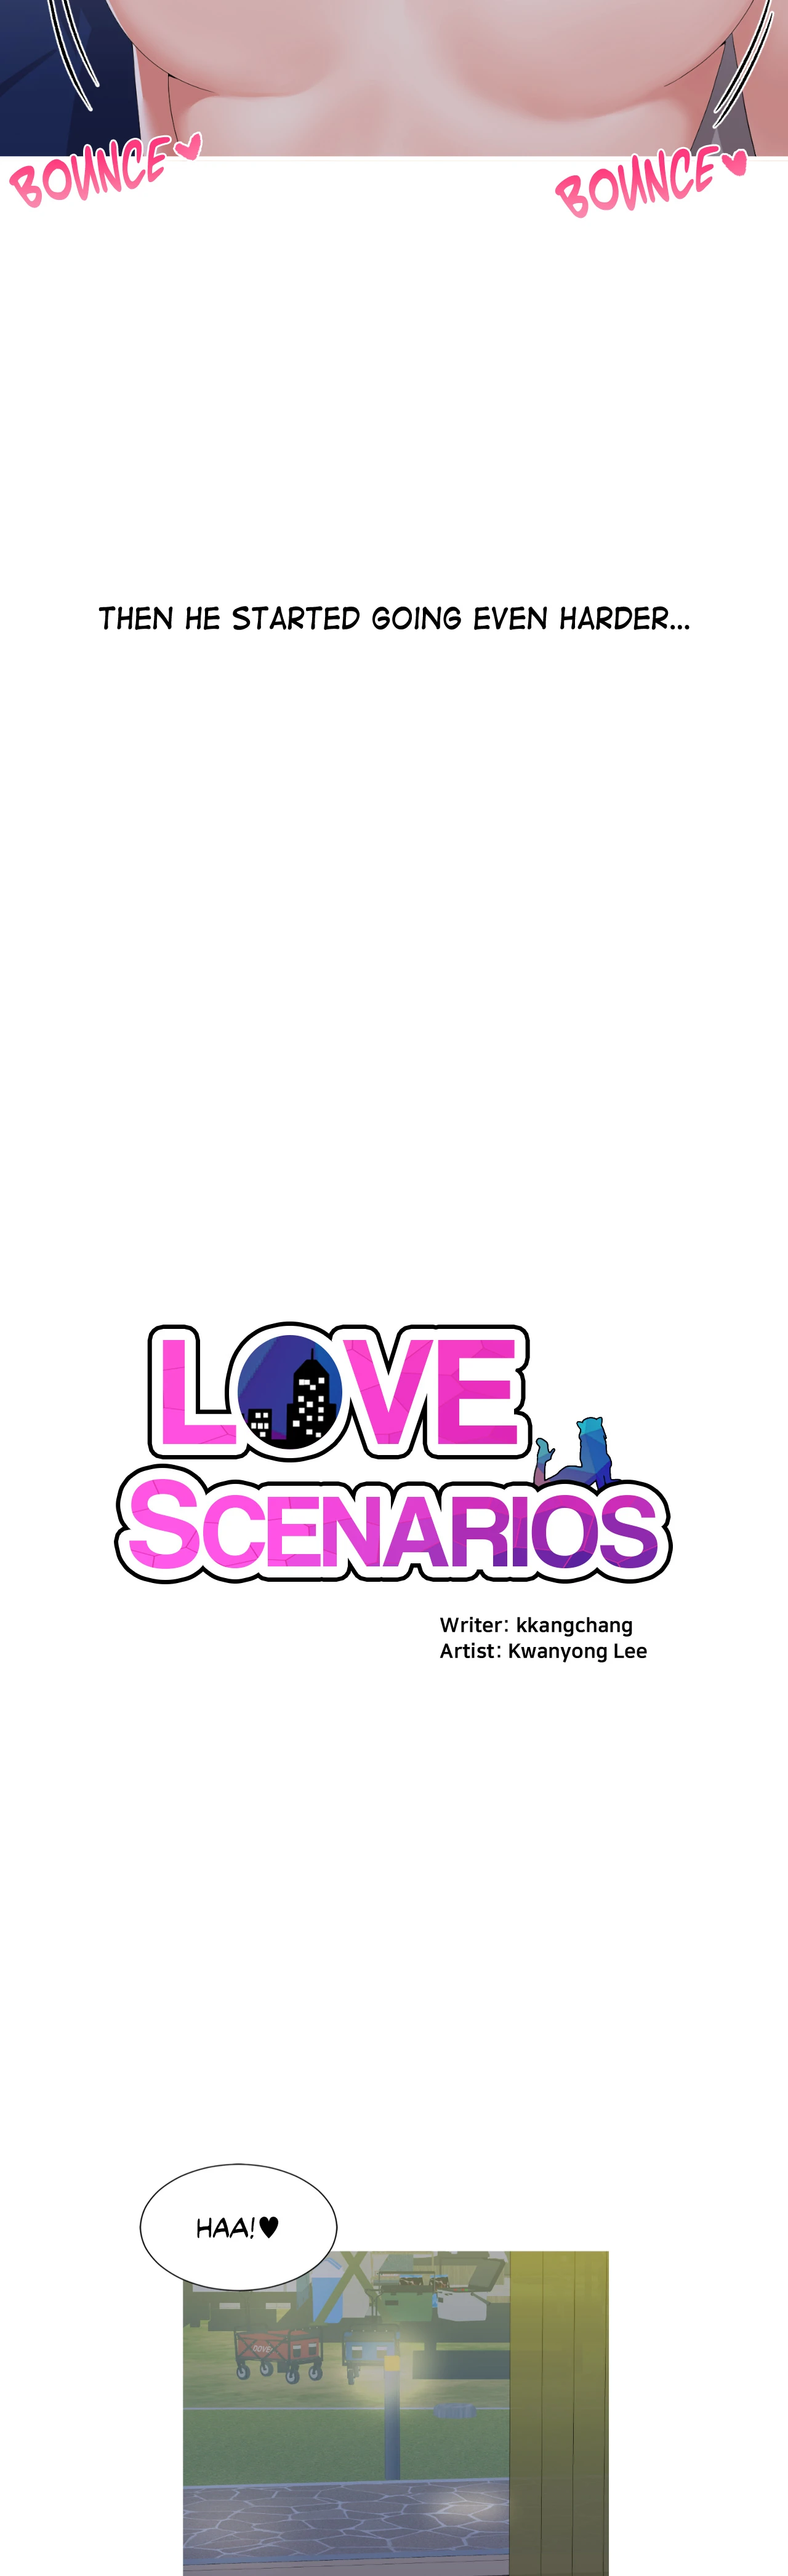 Watch image manhwa Love Scenarios - Chapter 13 - 021289b17e85e19a7a - ManhwaXX.net